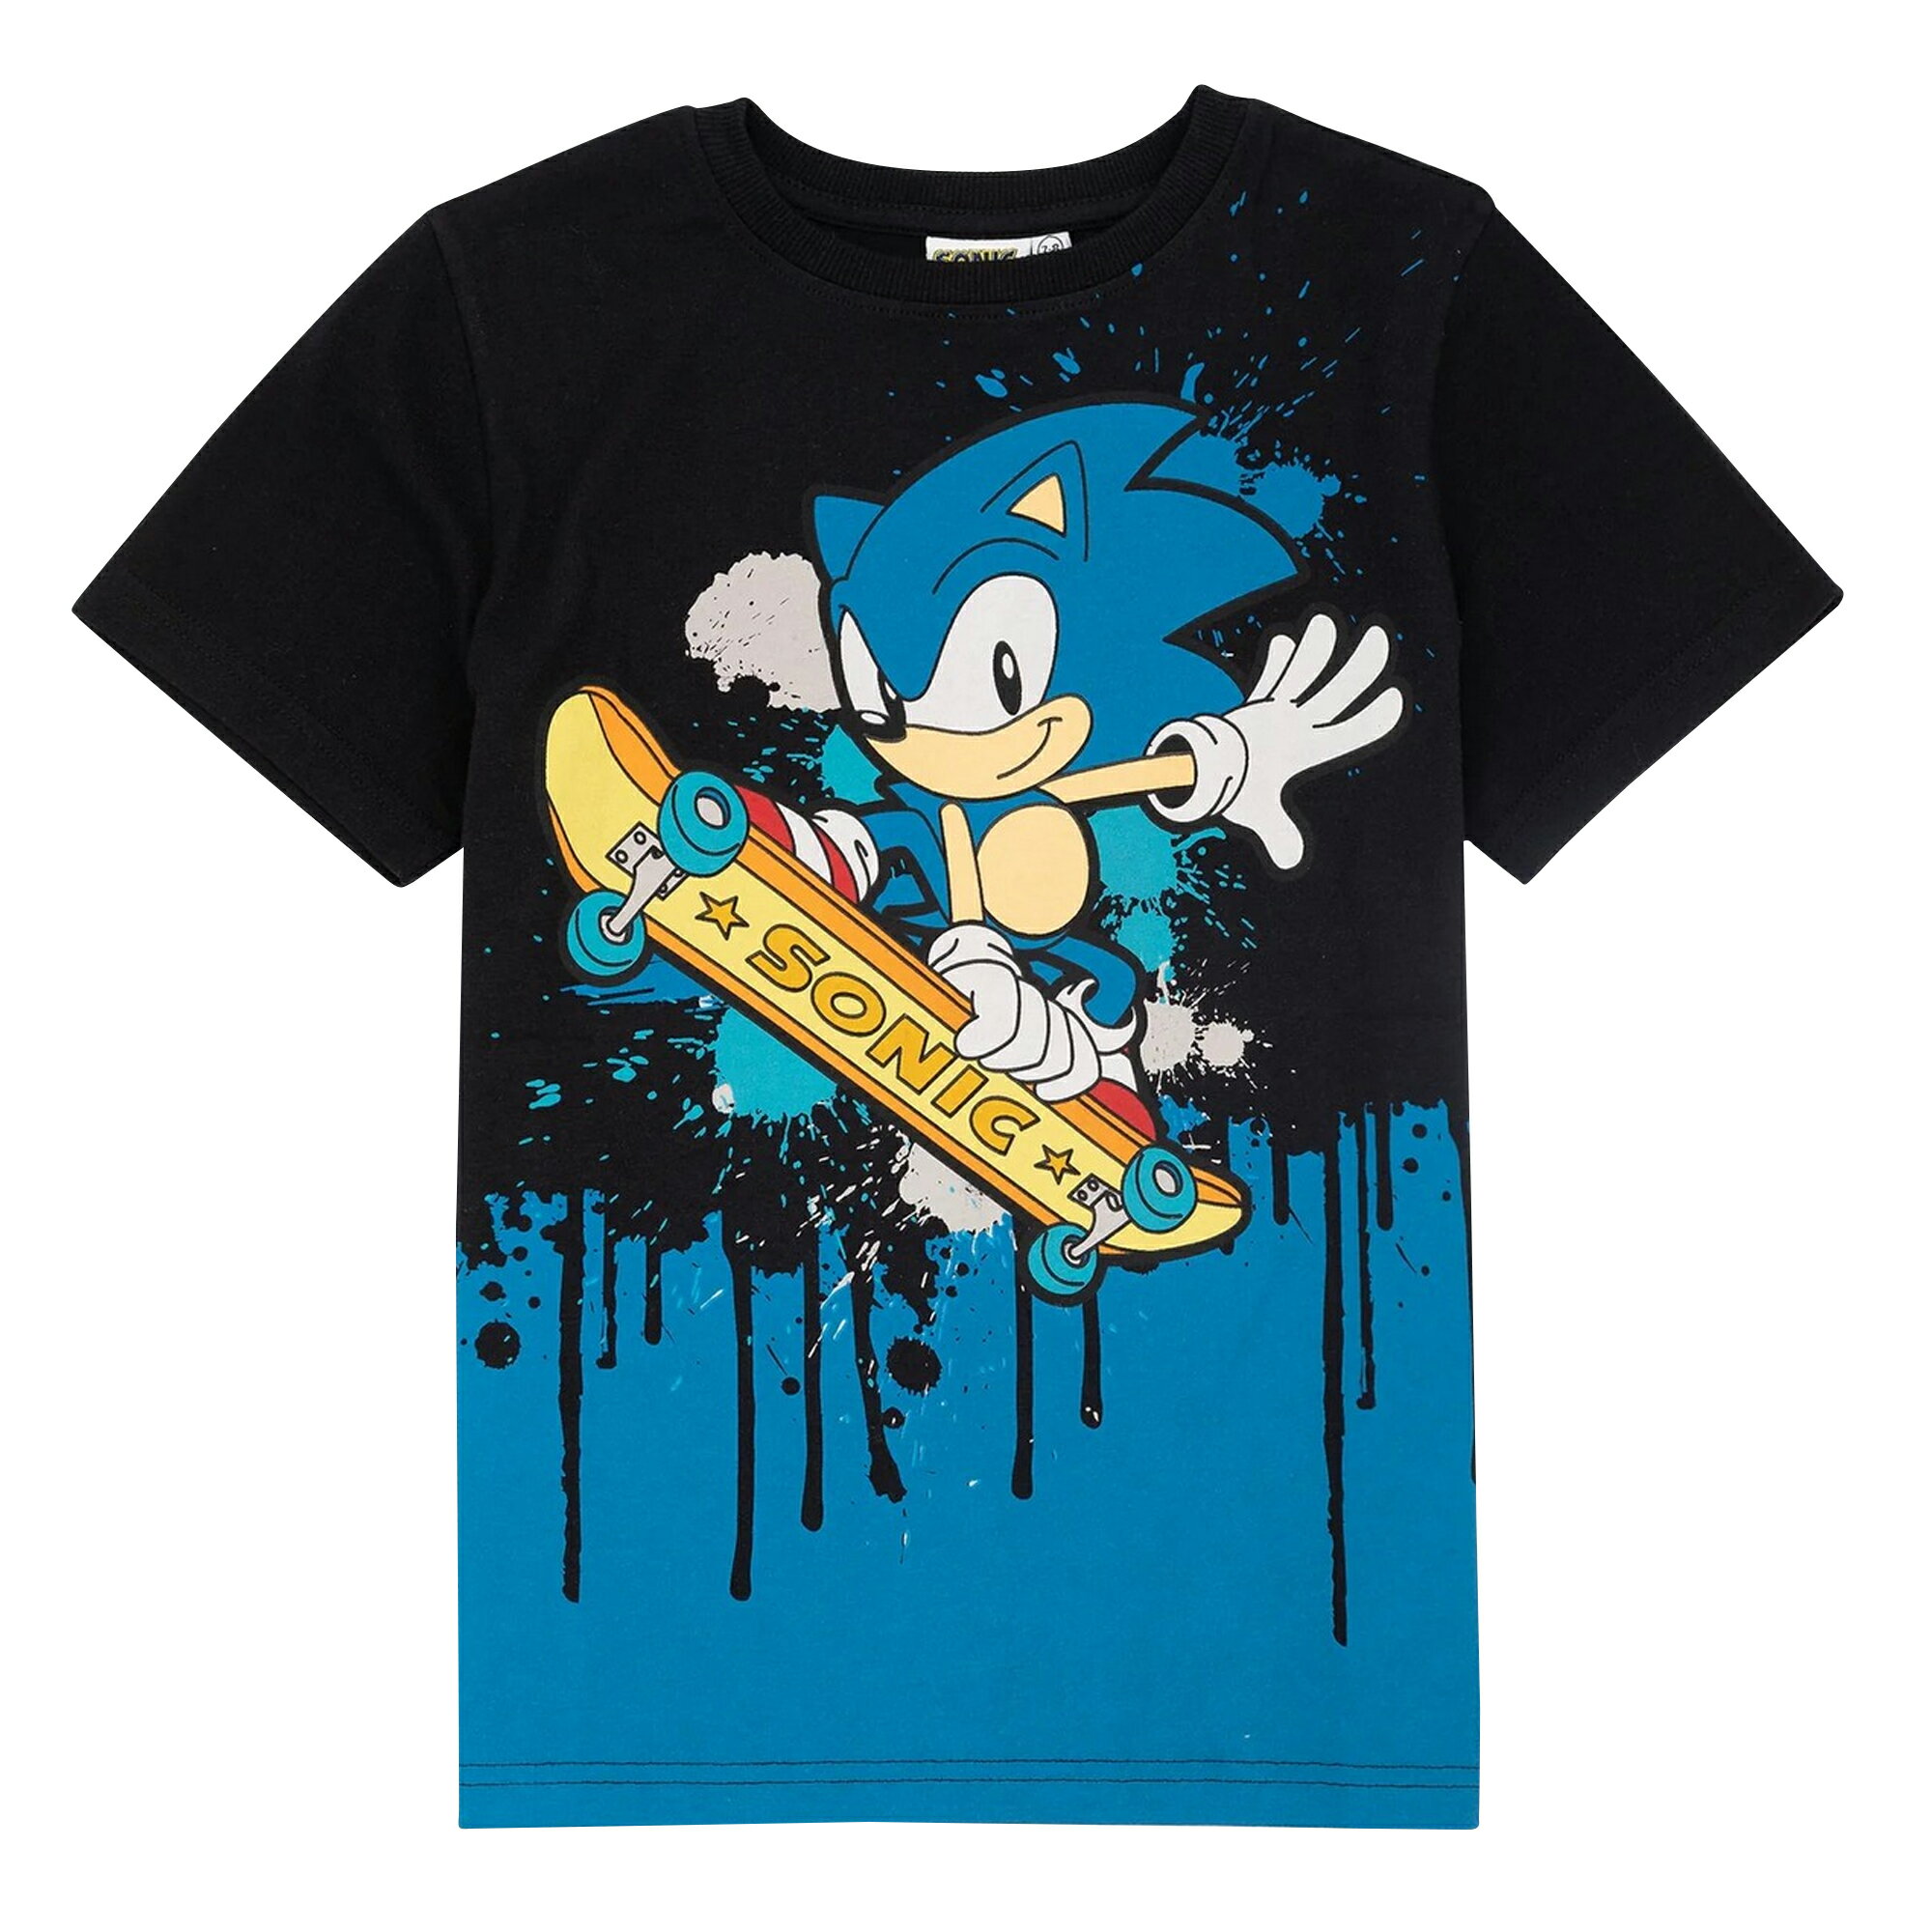 (ソニック ザ ヘッジホッグ) Sonic The Hedgehog オフィシャル商品 キッズ 子供 スケートボード Tシャツ 半袖 トップス カットソー 【海外通販】